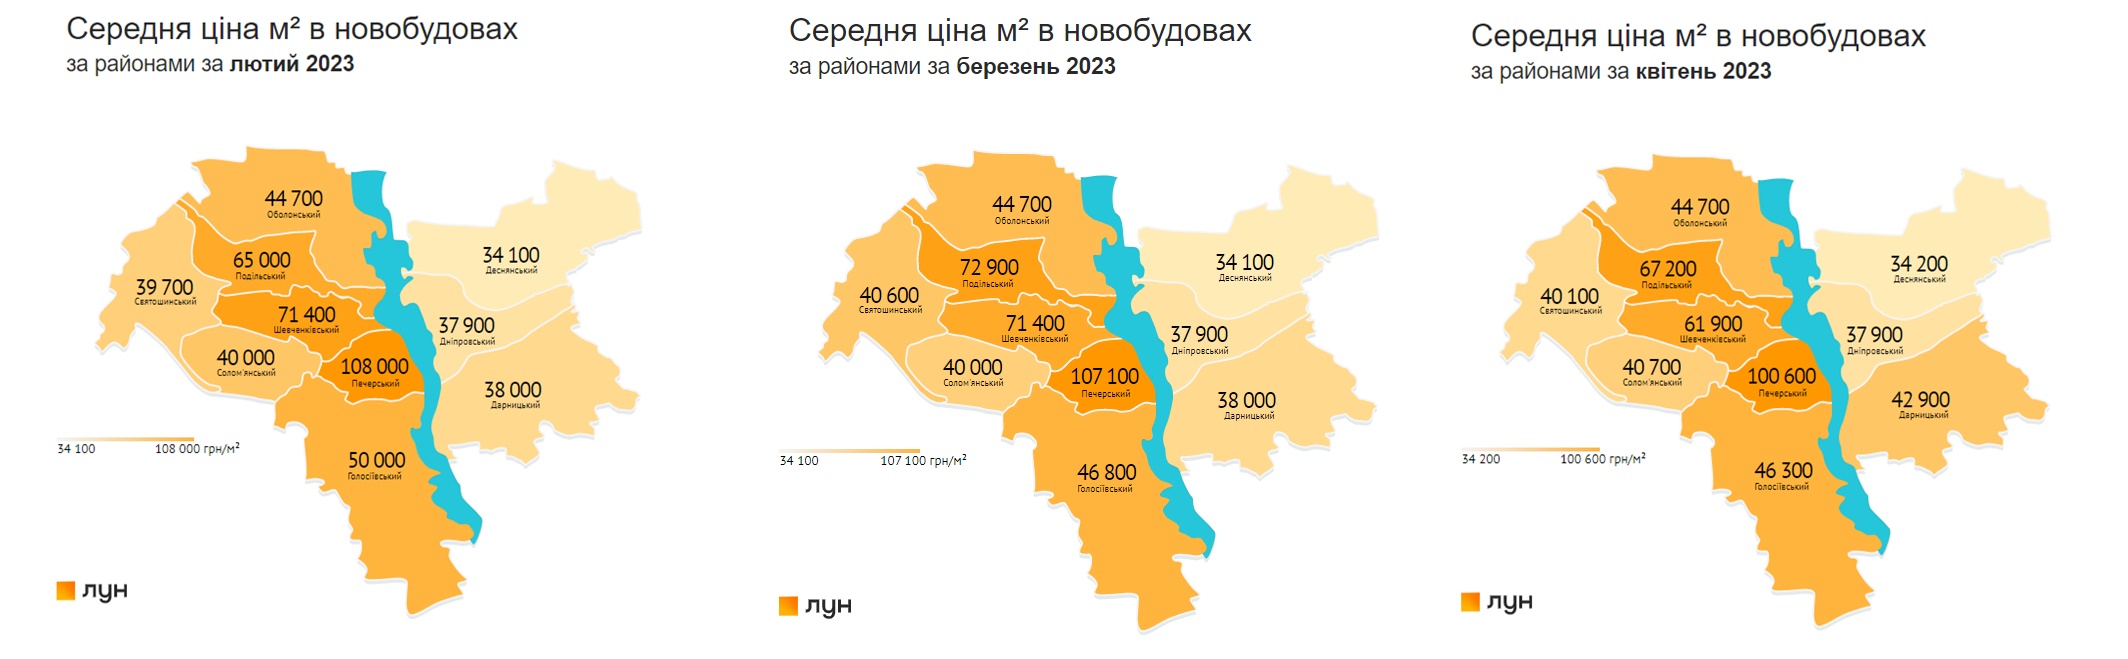 Середні ціни за метр квадратний у новобудовах Києва за районами за січень-березень 2023